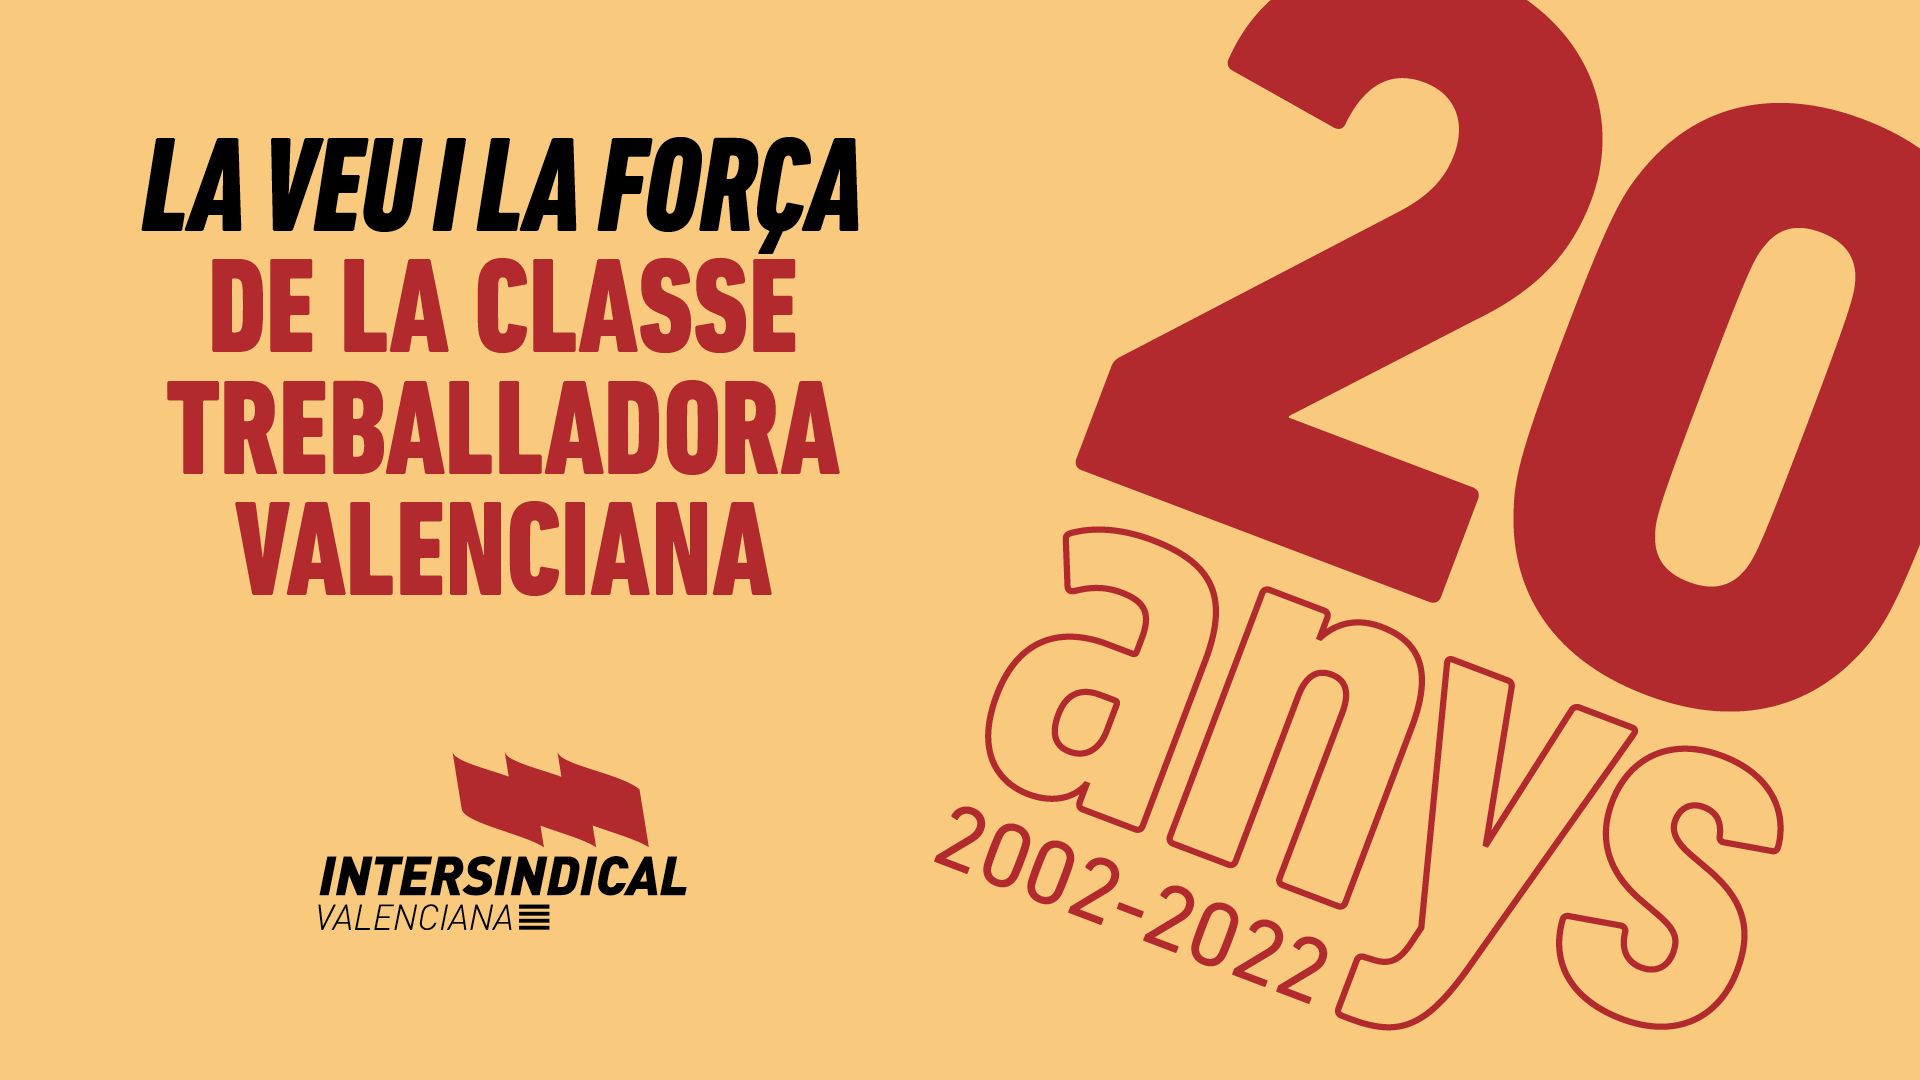 ‘La veu i la força de la classe treballadora valenciana’